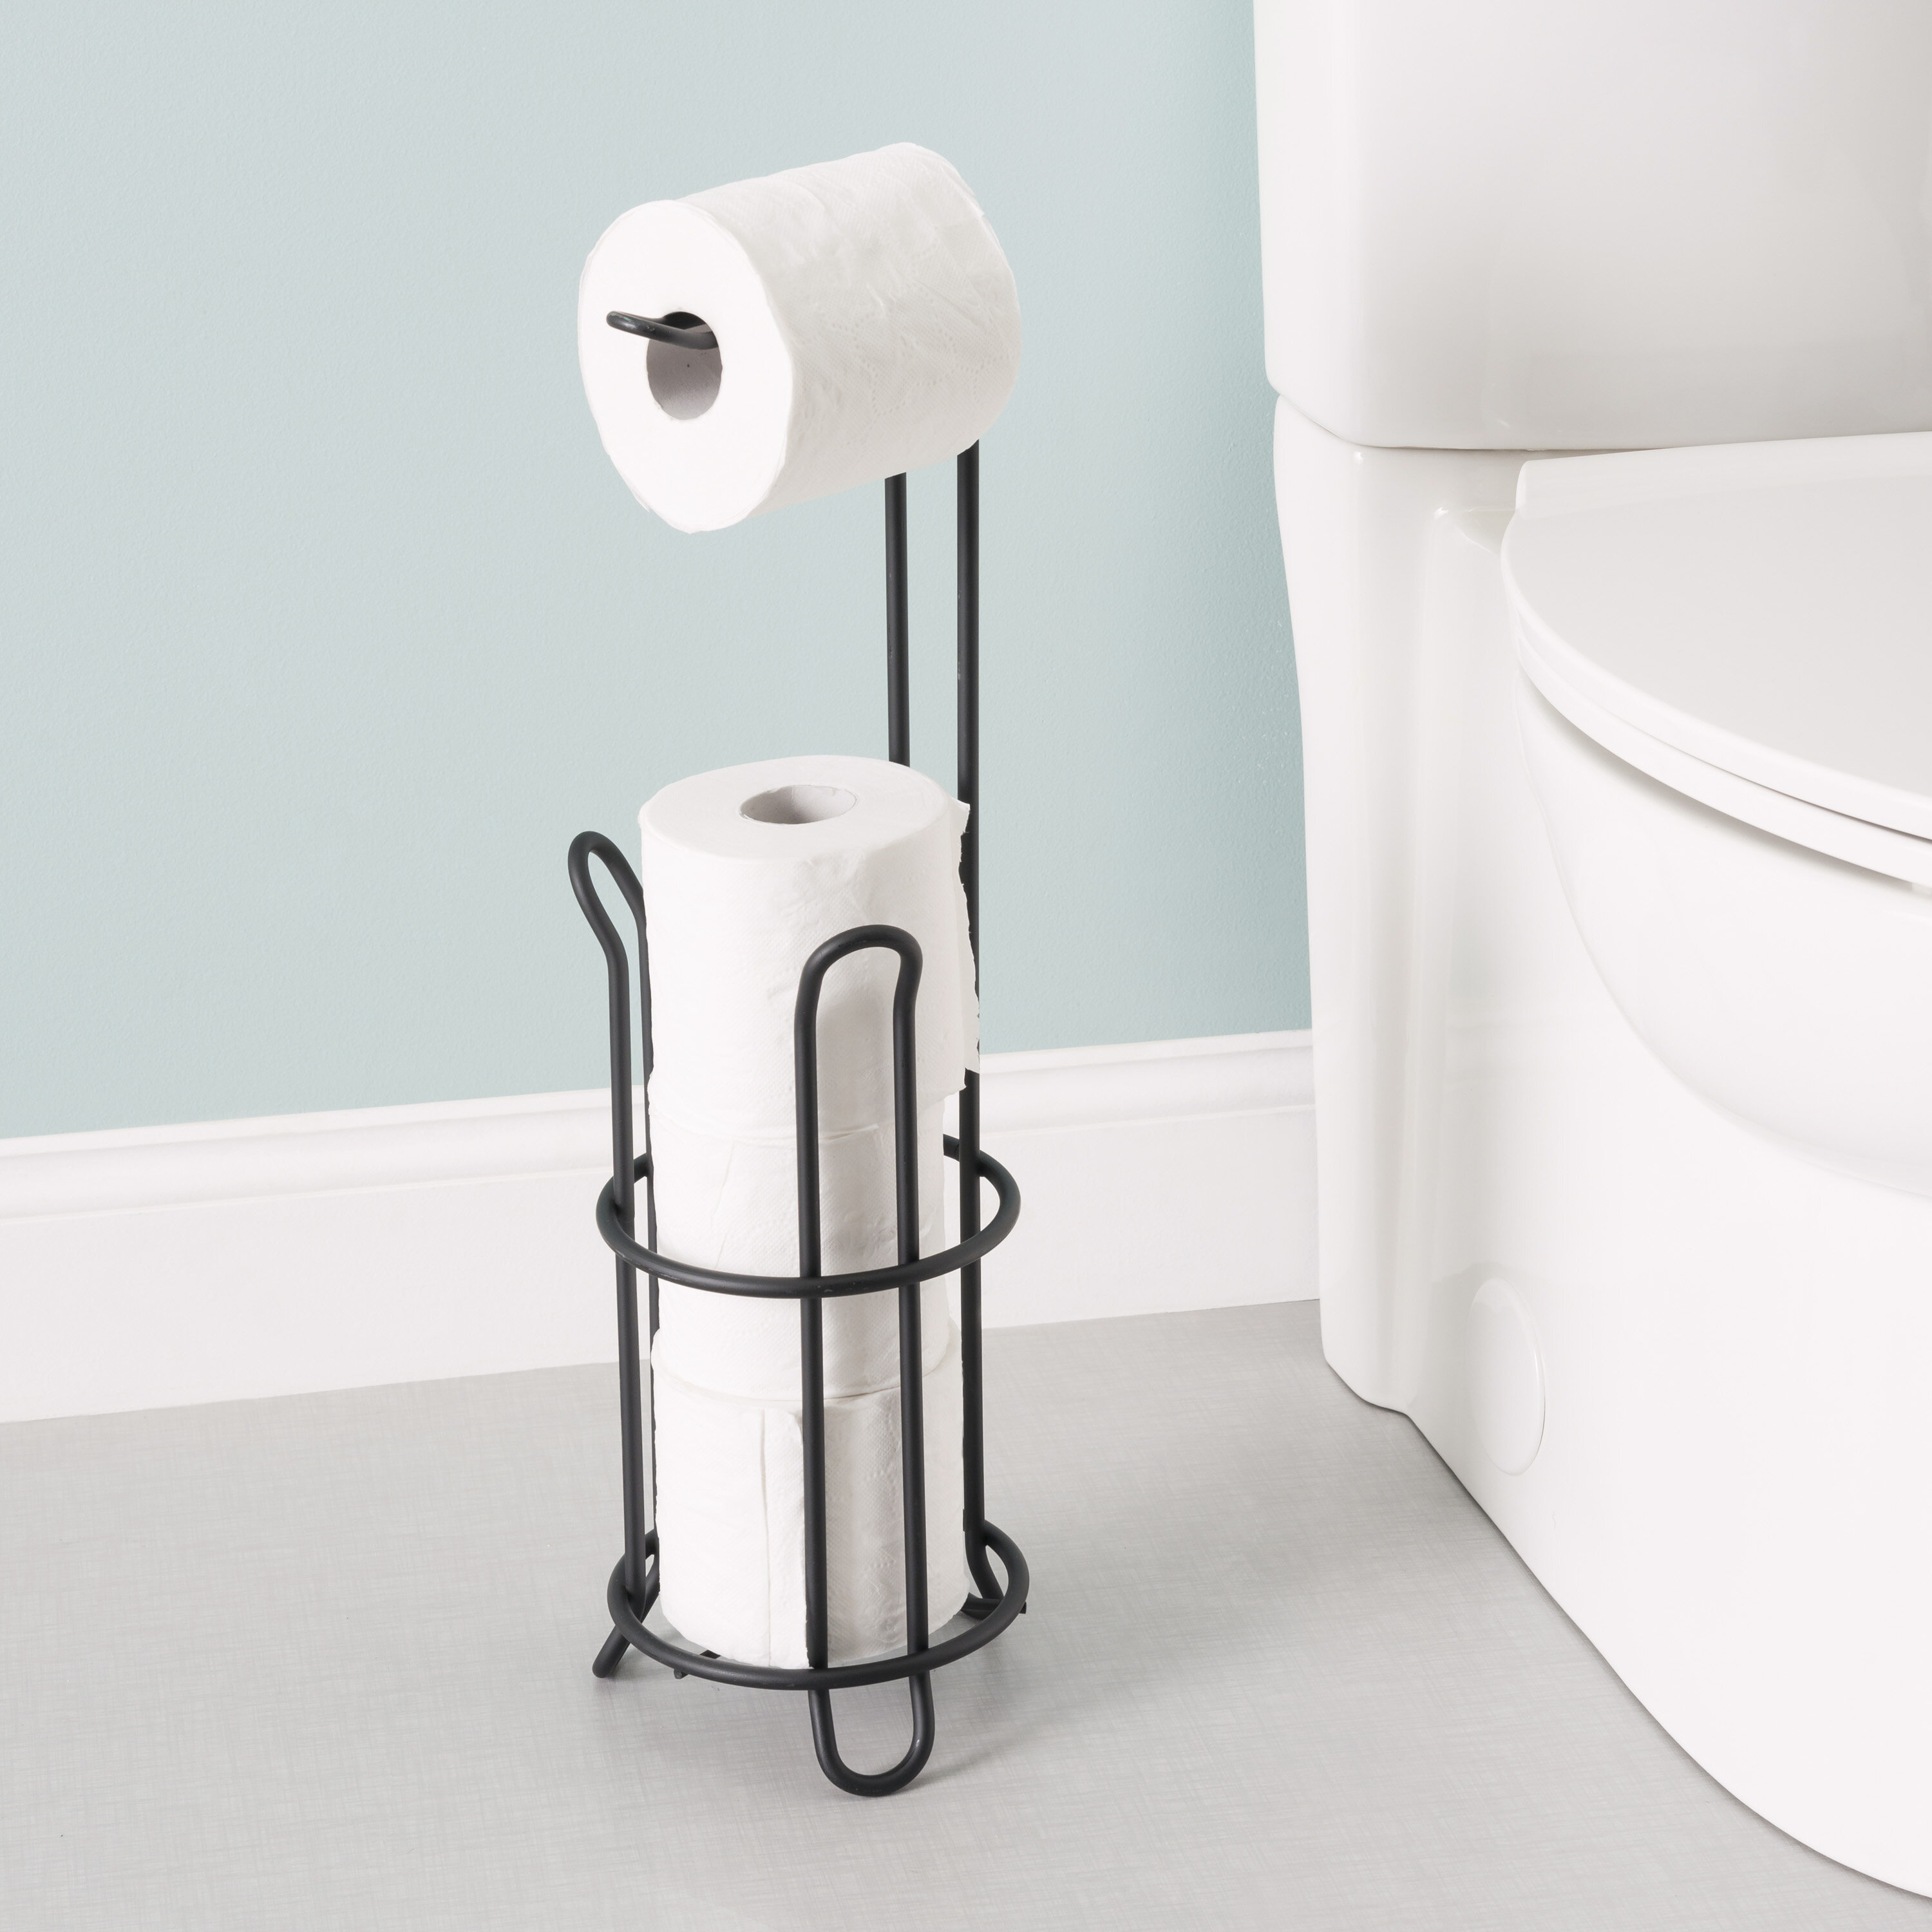 https://assets.wfcdn.com/im/21562579/compr-r85/7467/74672623/wiechmann-freestanding-toilet-paper-holder.jpg